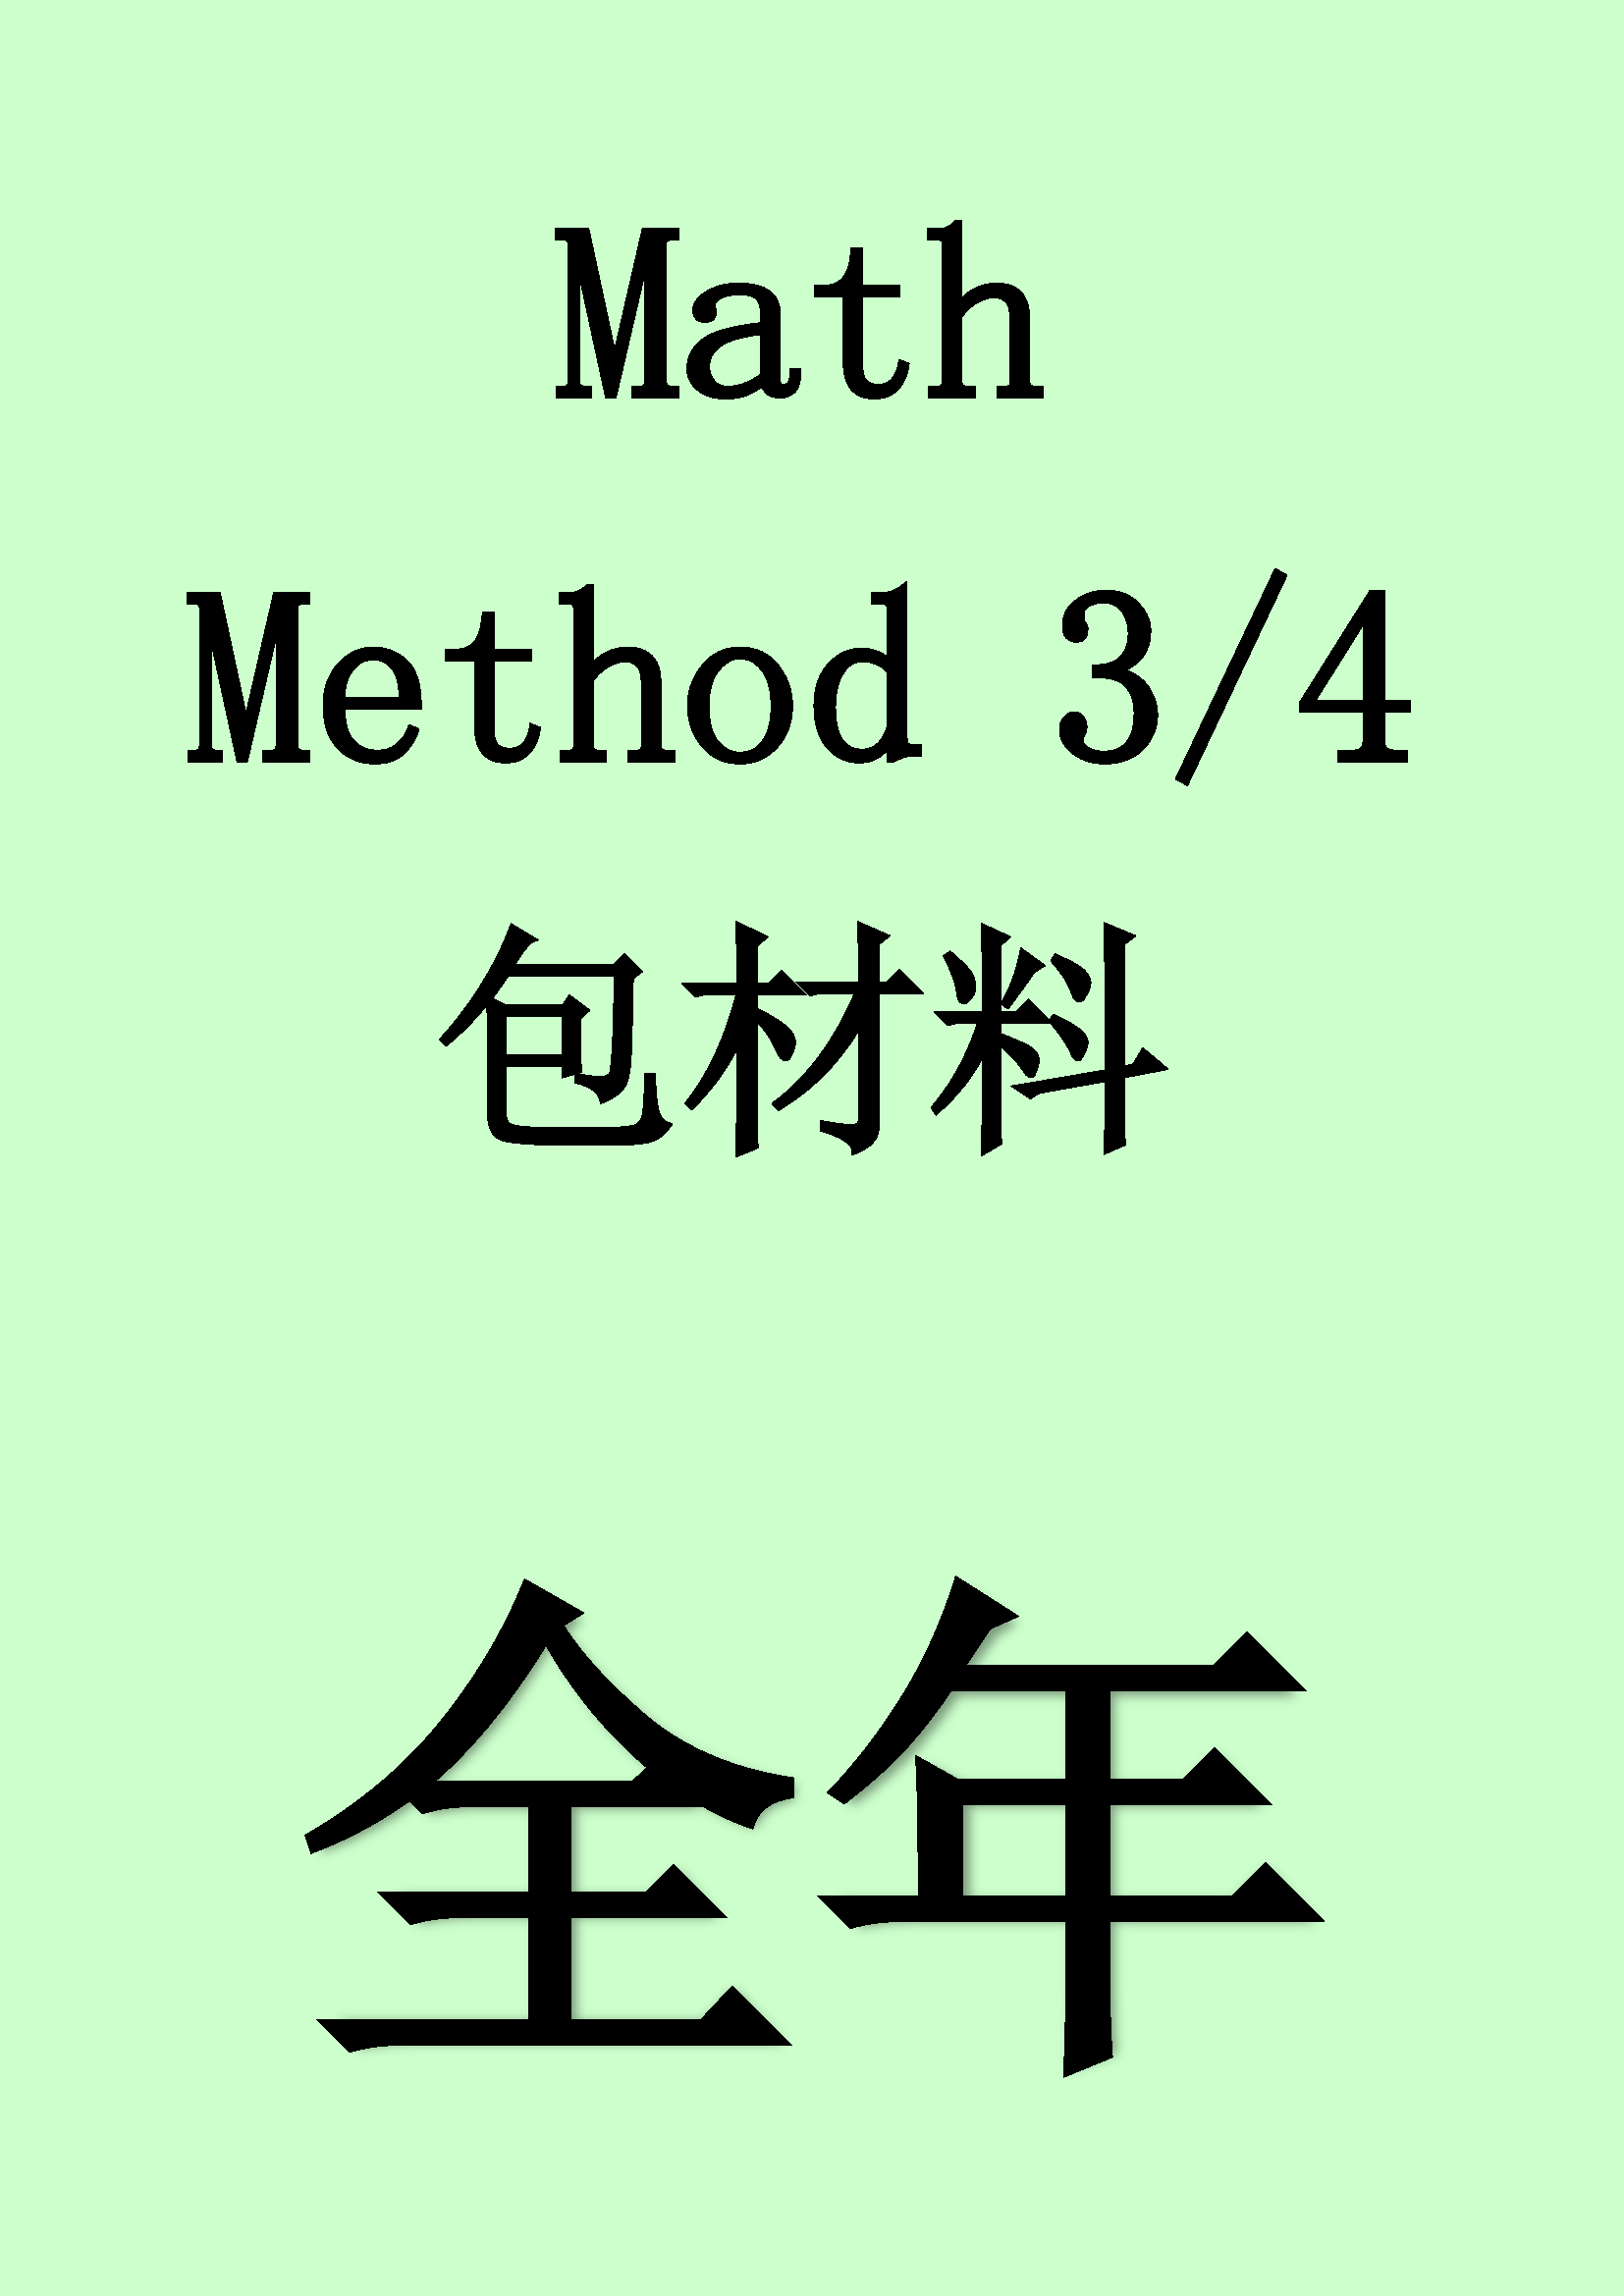 MTJUN Math Method Unit 3/4 Full year